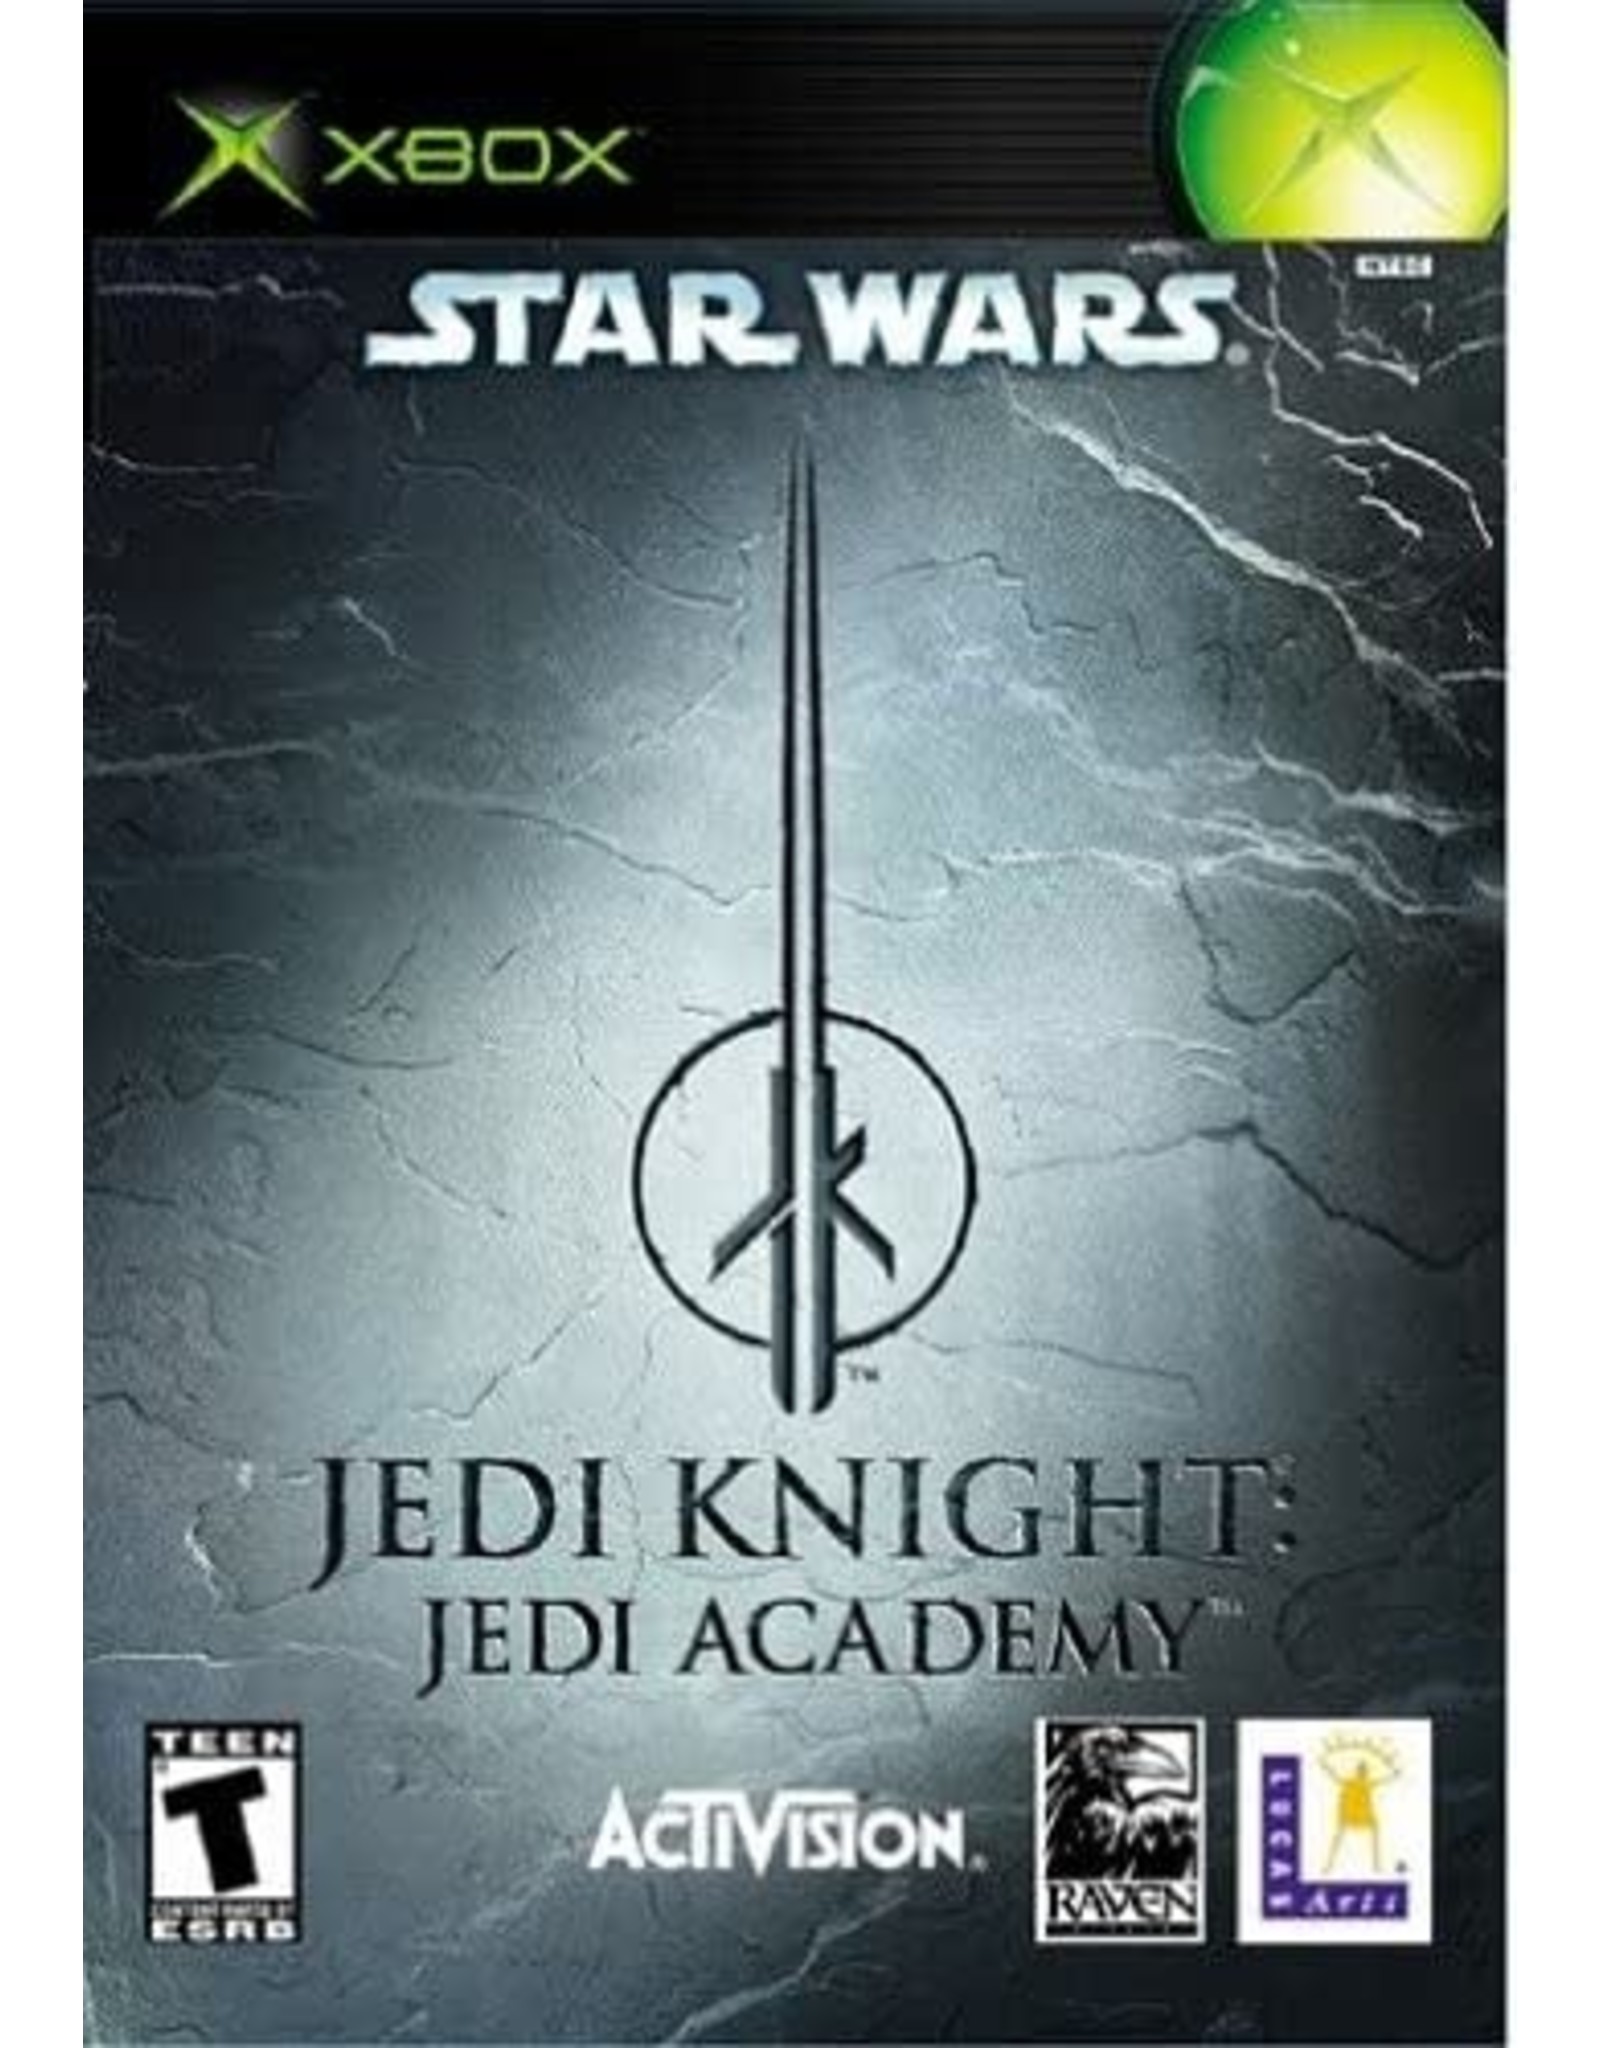 Xbox Star Wars Jedi Knight Academy (No Manual)